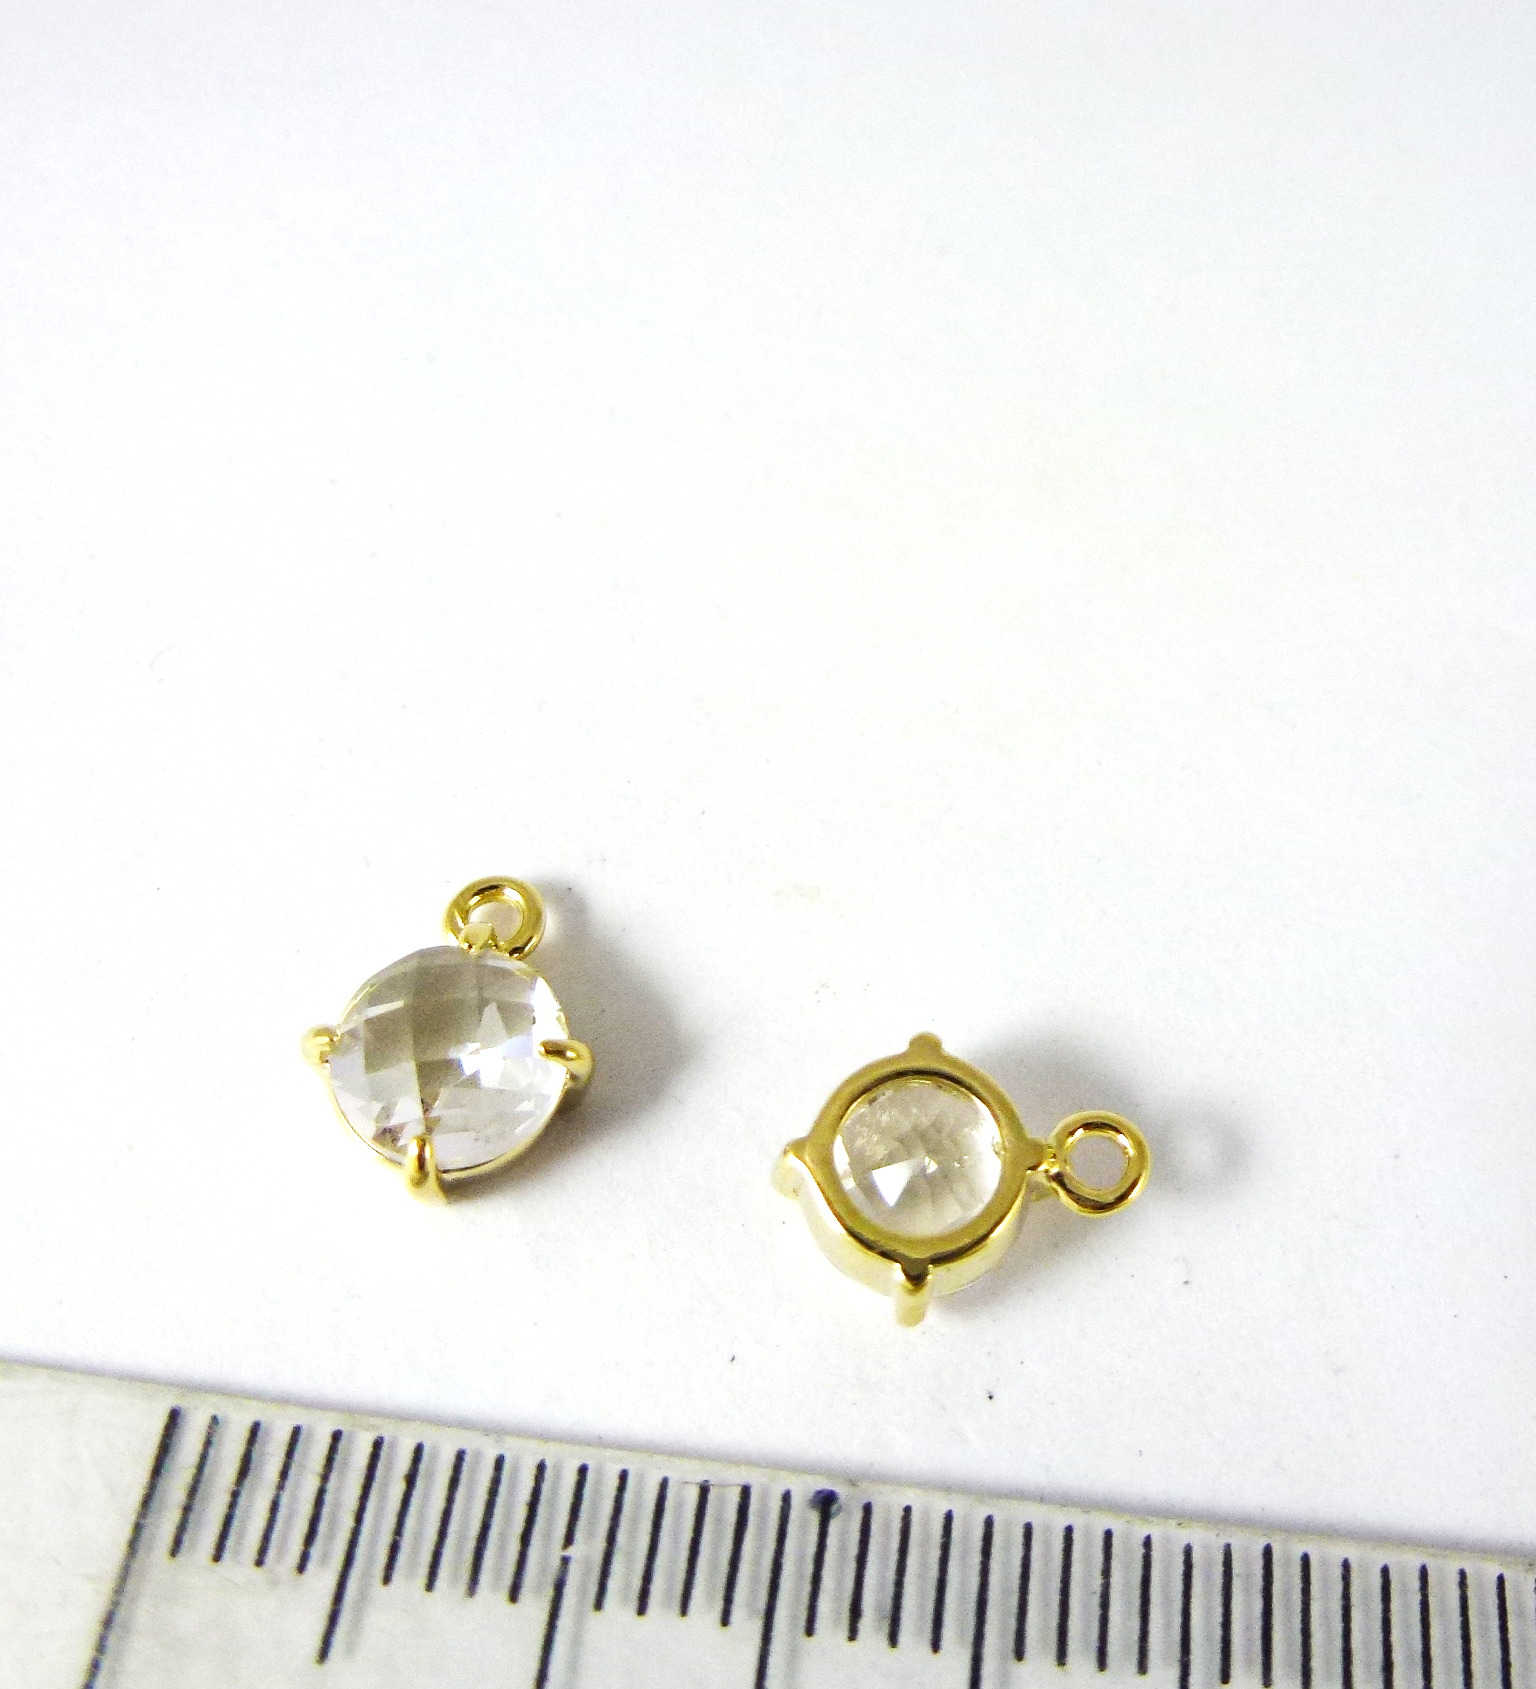 6mm銅鍍金色單孔四爪圓形誕生石-四月鑽石